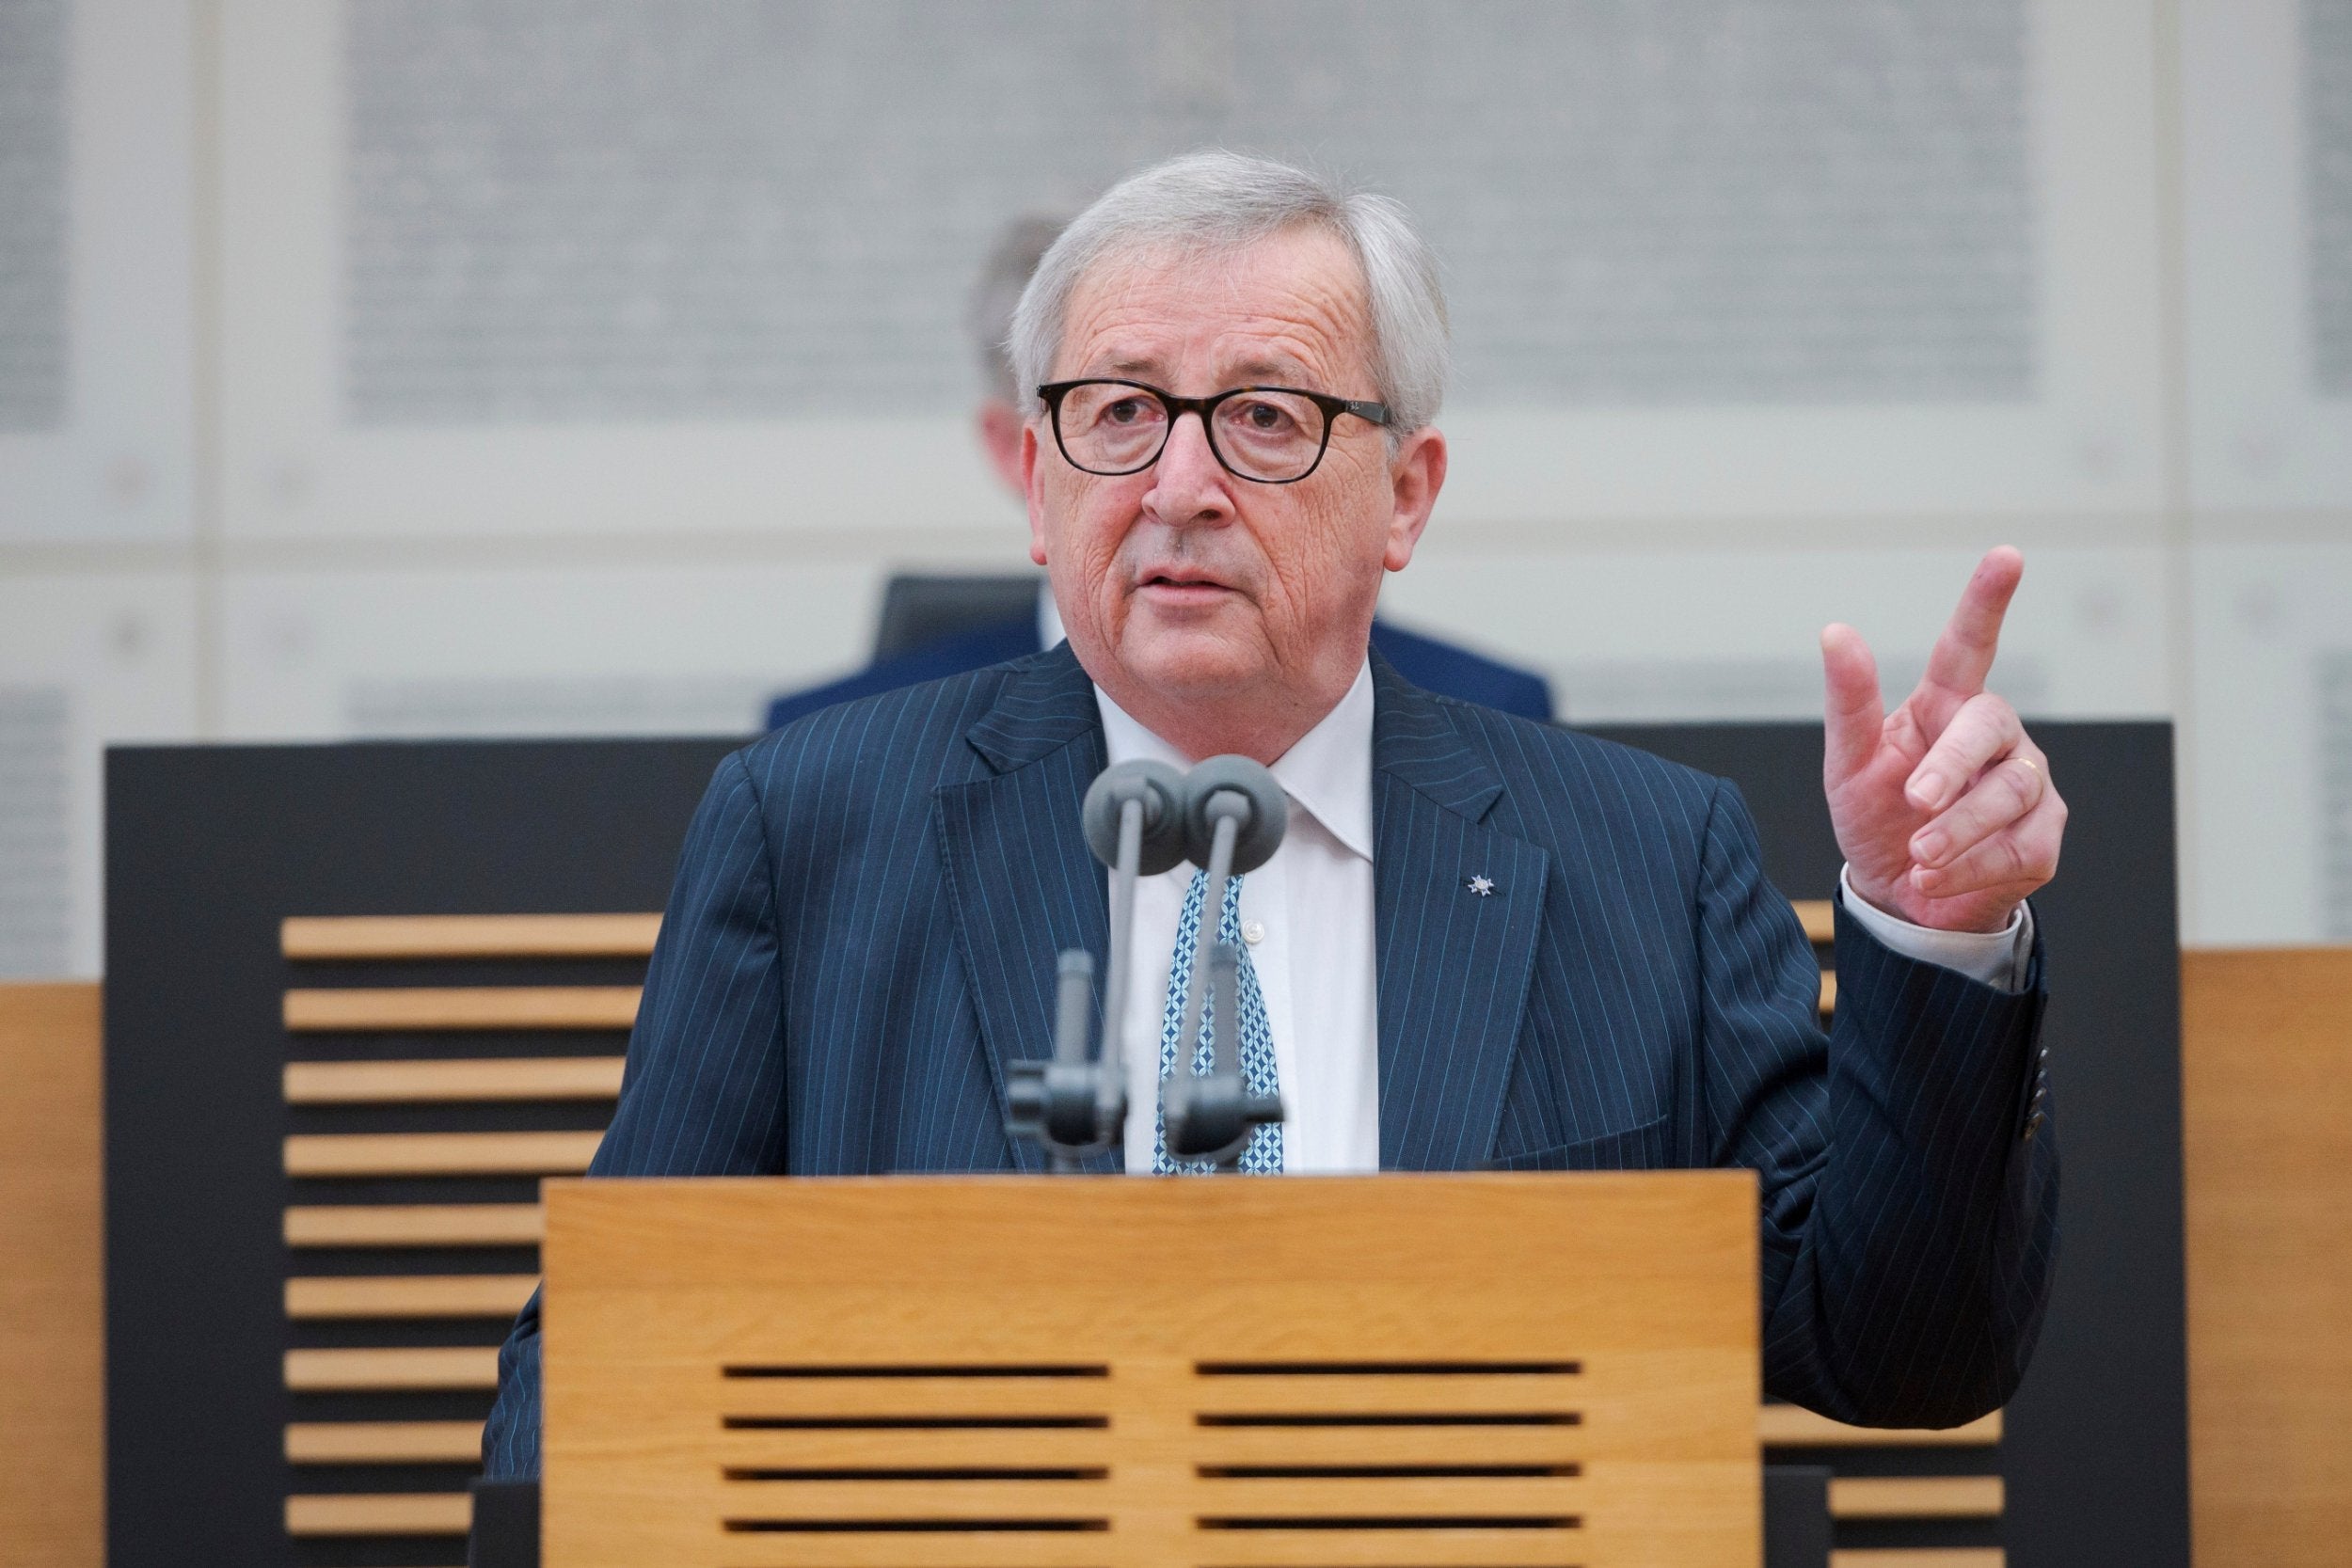 Juncker delivers a speech in Saarland, Germany